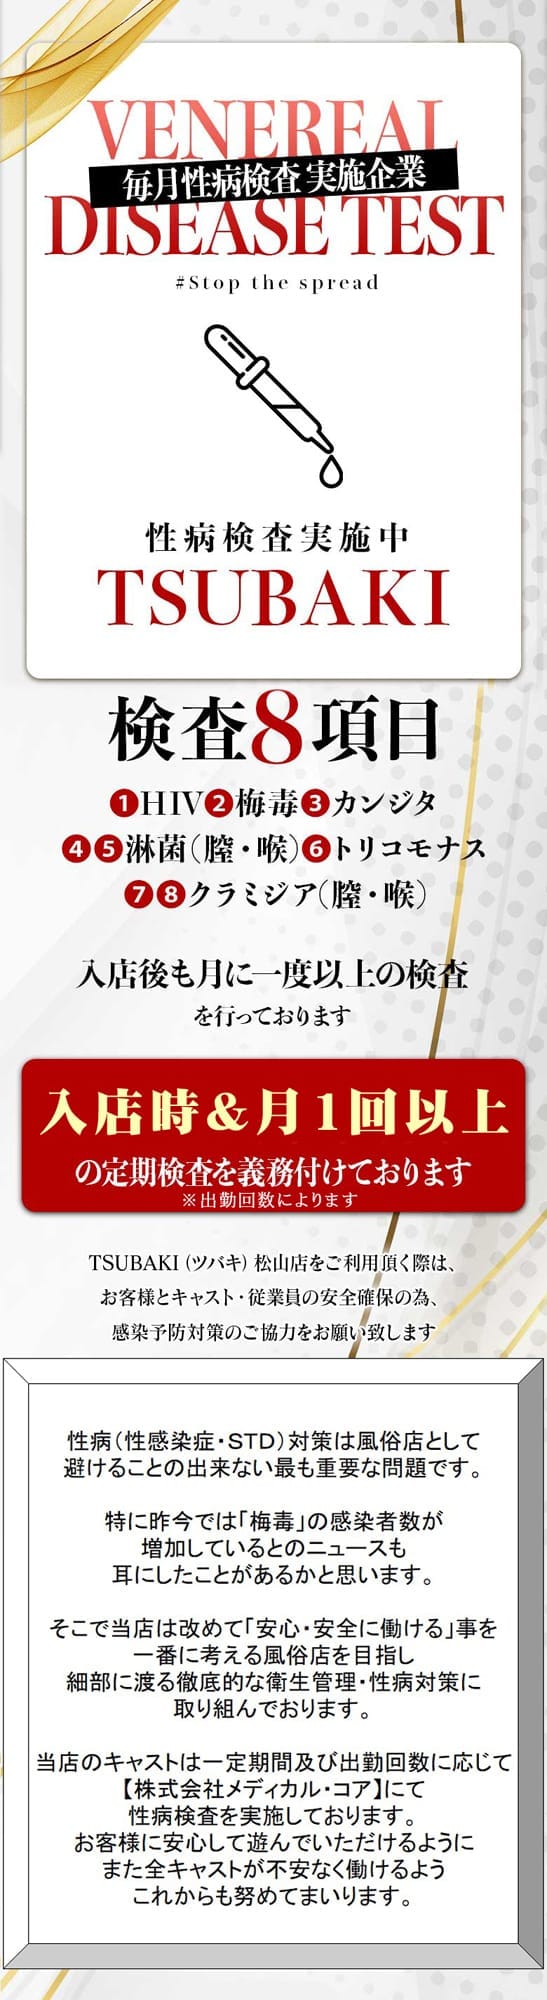 「定期的に検査を行っております」05/08(水) 17:15 | TSUBAKI(ツバキ)松山のお得なニュース